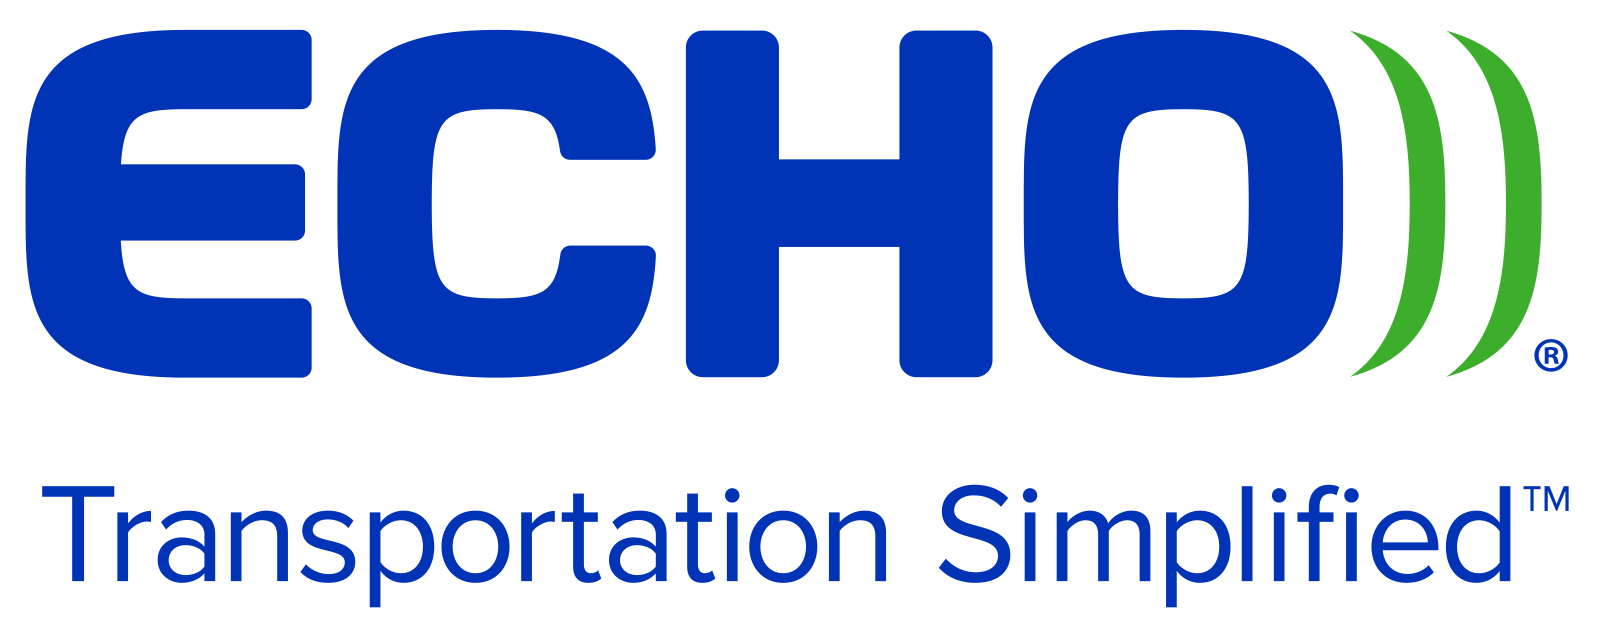 Echo Global Logistics, Inc. Company Logo